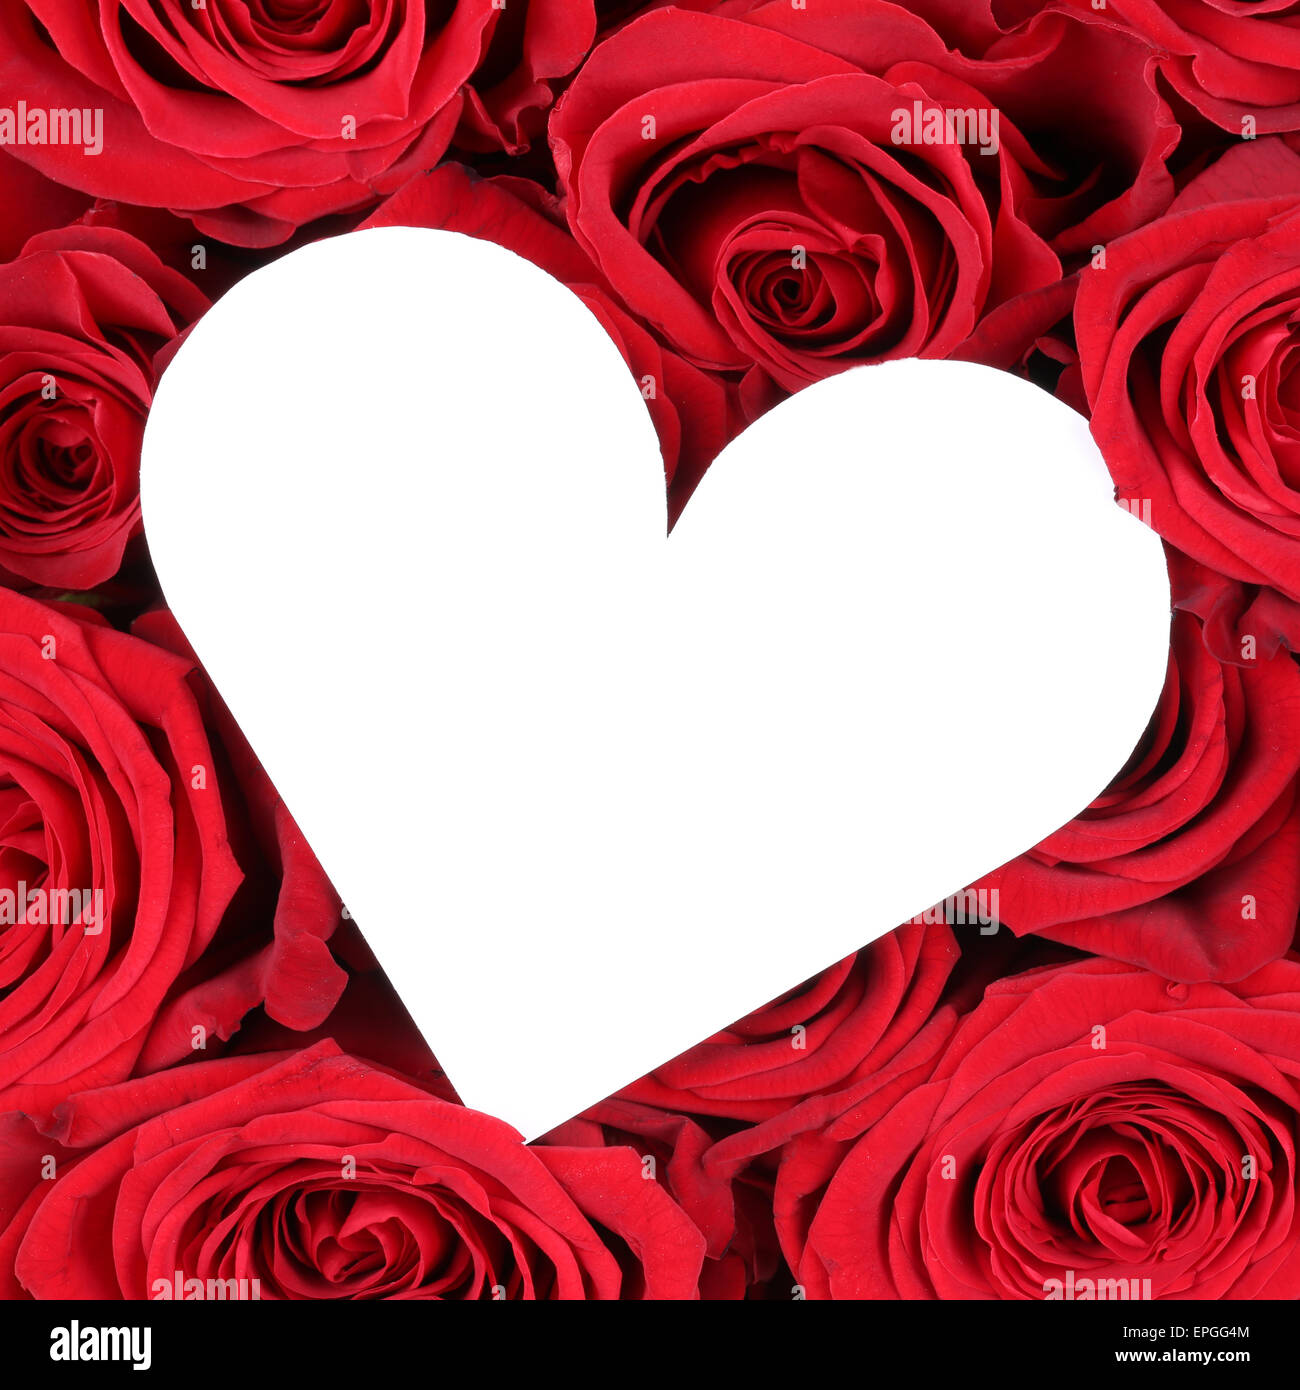 Rote Rosen mit Herz als Zeichen der Liebe zum Valentinstag Stock Photo -  Alamy